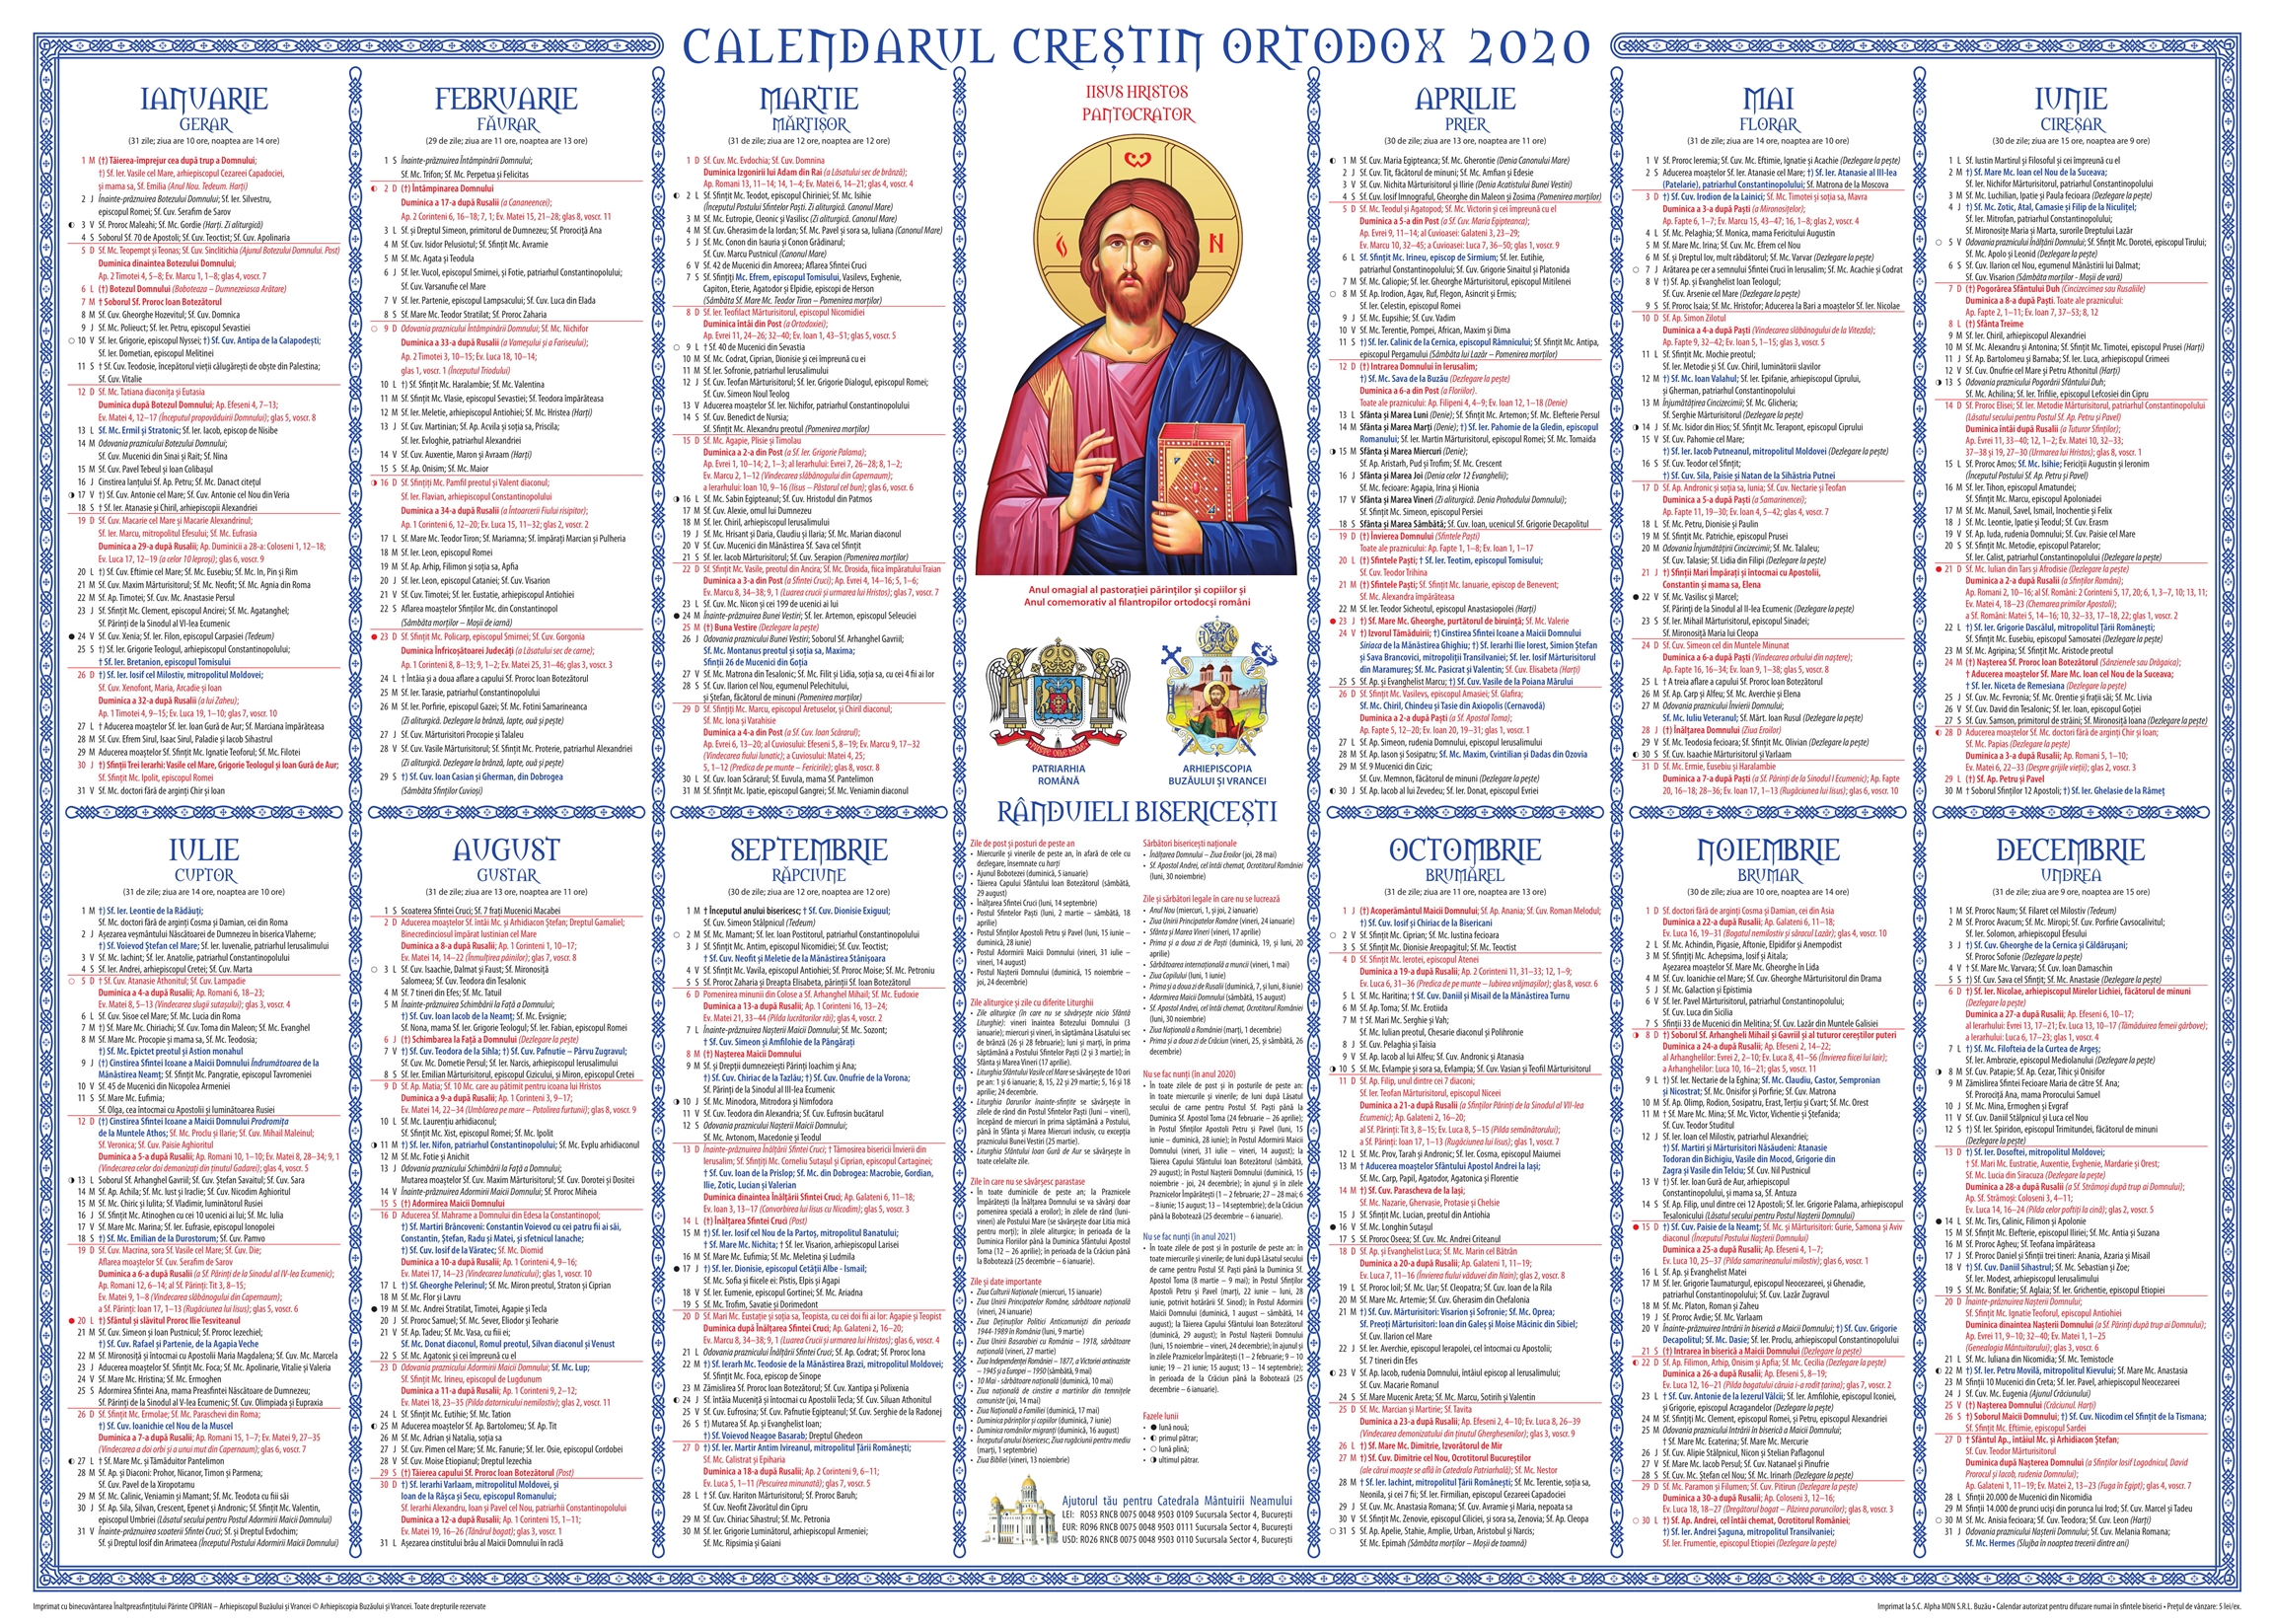 A apărut calendarul creștin ortodox pentru anul 2020 în ...